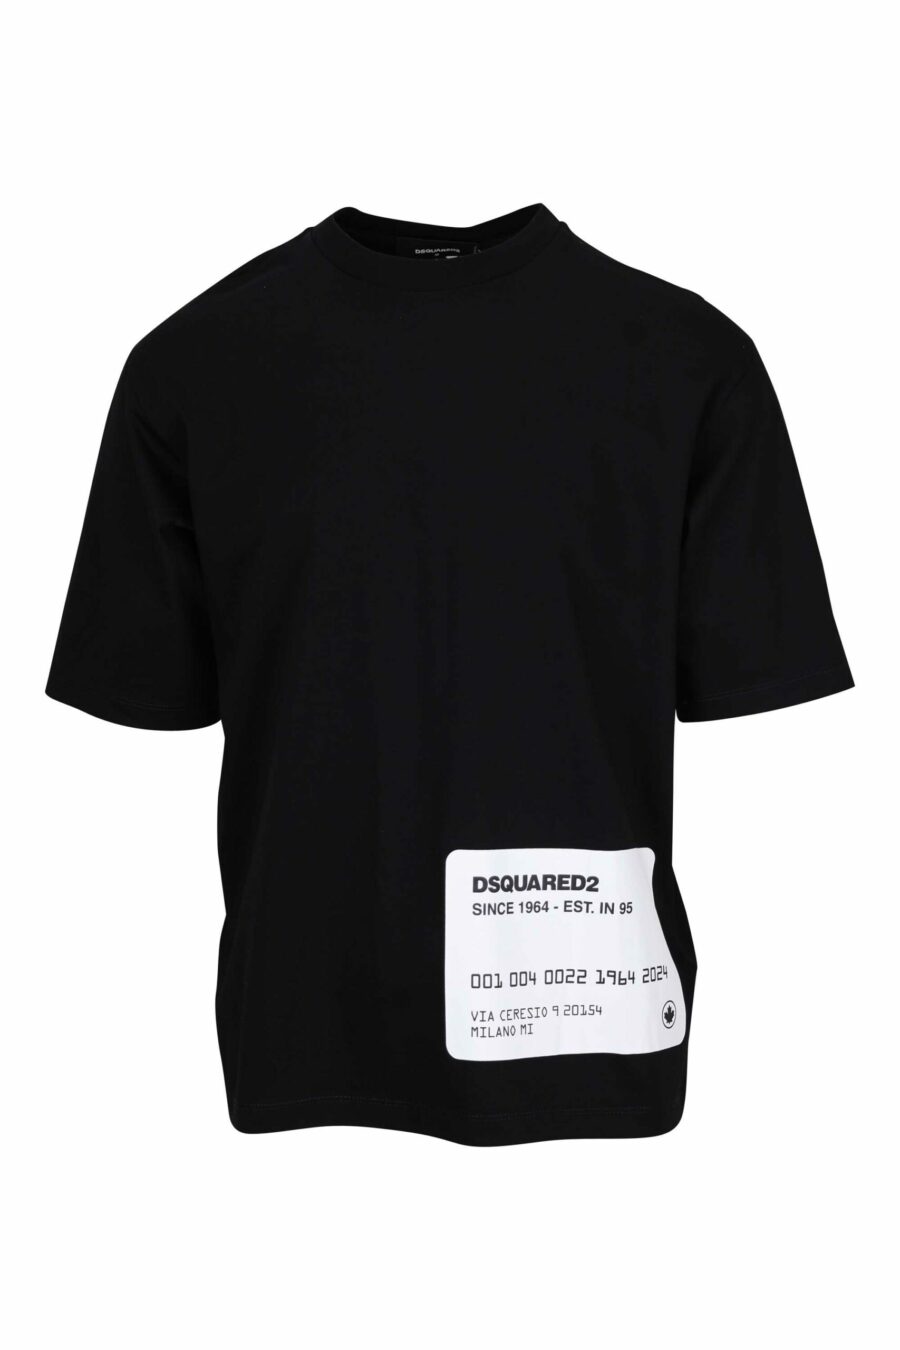 Schwarzes Oversize-T-Shirt mit Kreditkartenlogo darunter - 8054148265618 skaliert